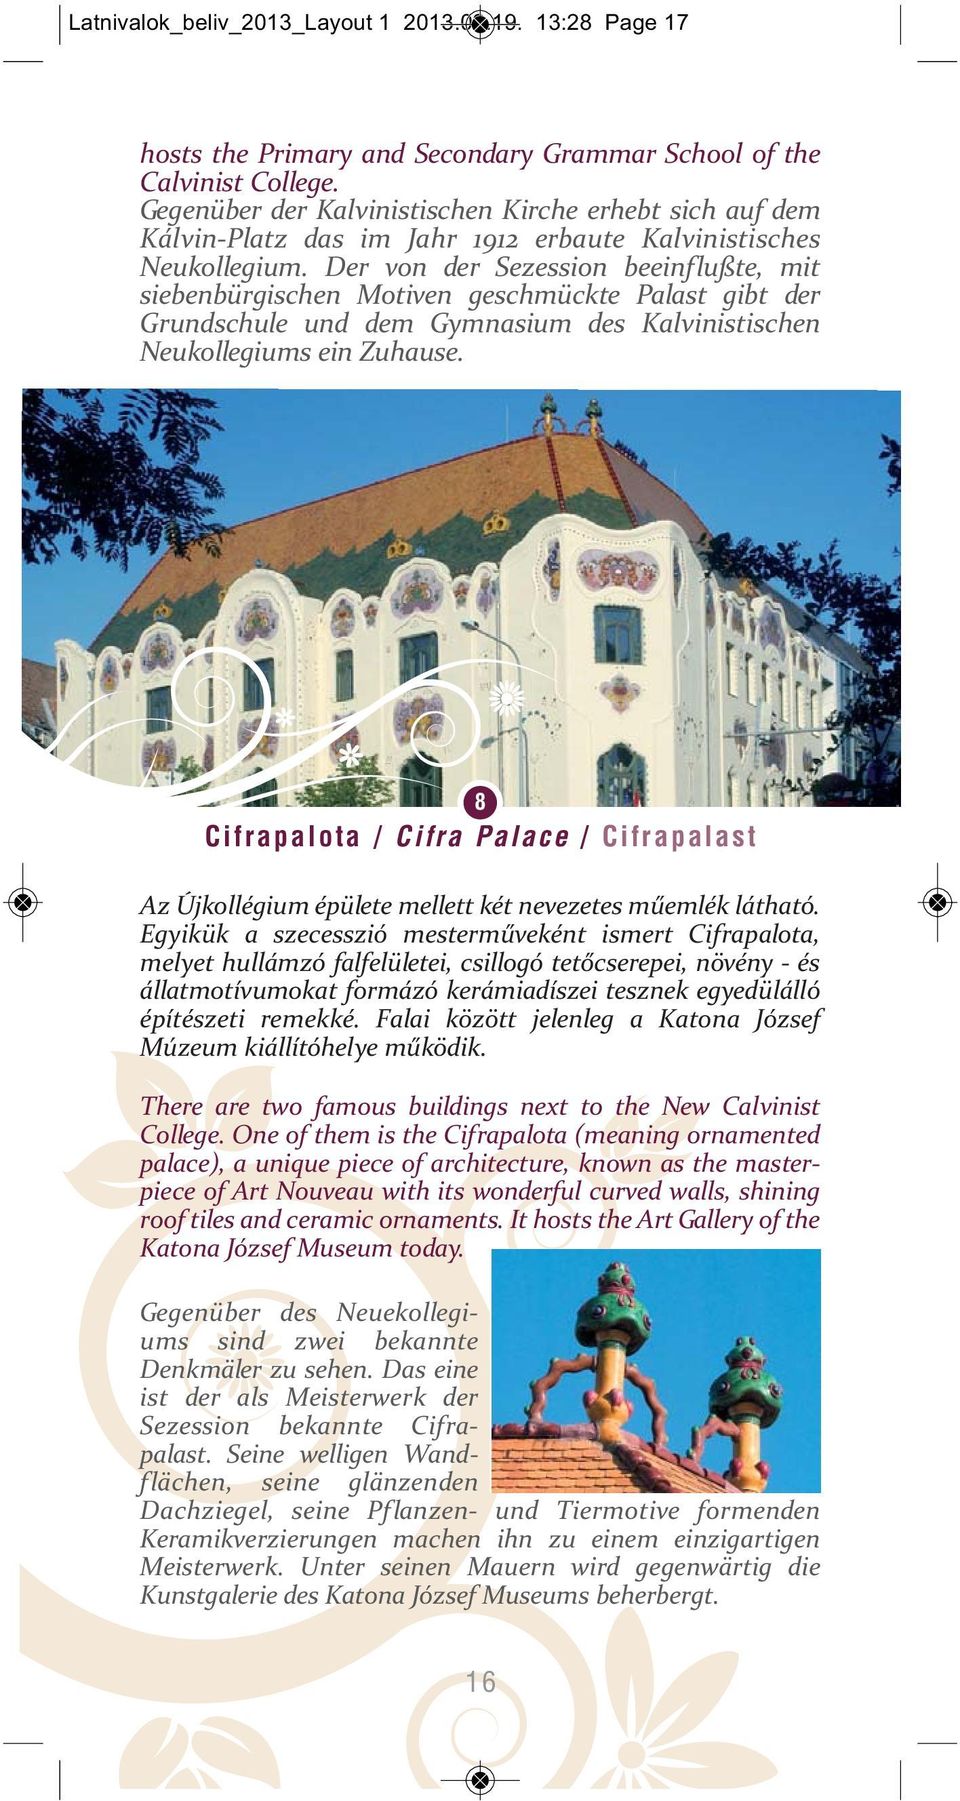 Der von der Sezession beeinflußte, mit siebenbürgischen Motiven geschmückte Palast gibt der Grundschule und dem Gymnasium des Kalvinistischen Neukollegiums ein Zuhause.